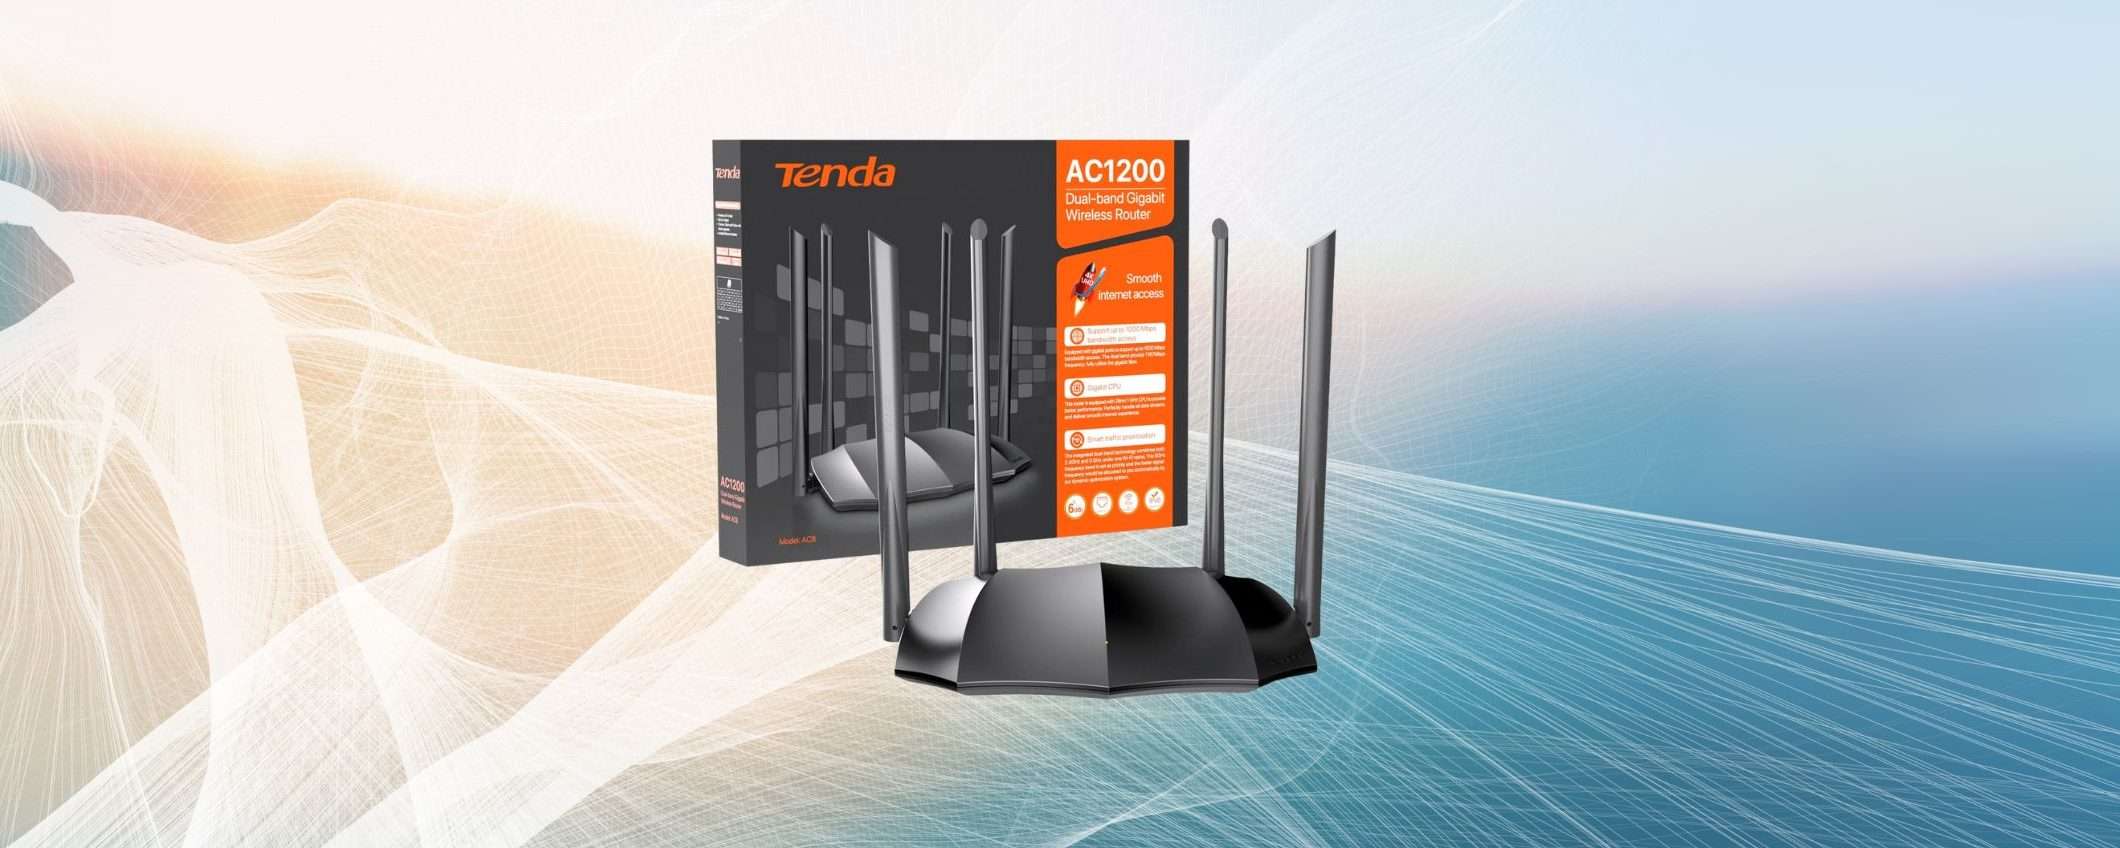 Router WiFi Dual-Band a SOLI 26,99€ su Amazon